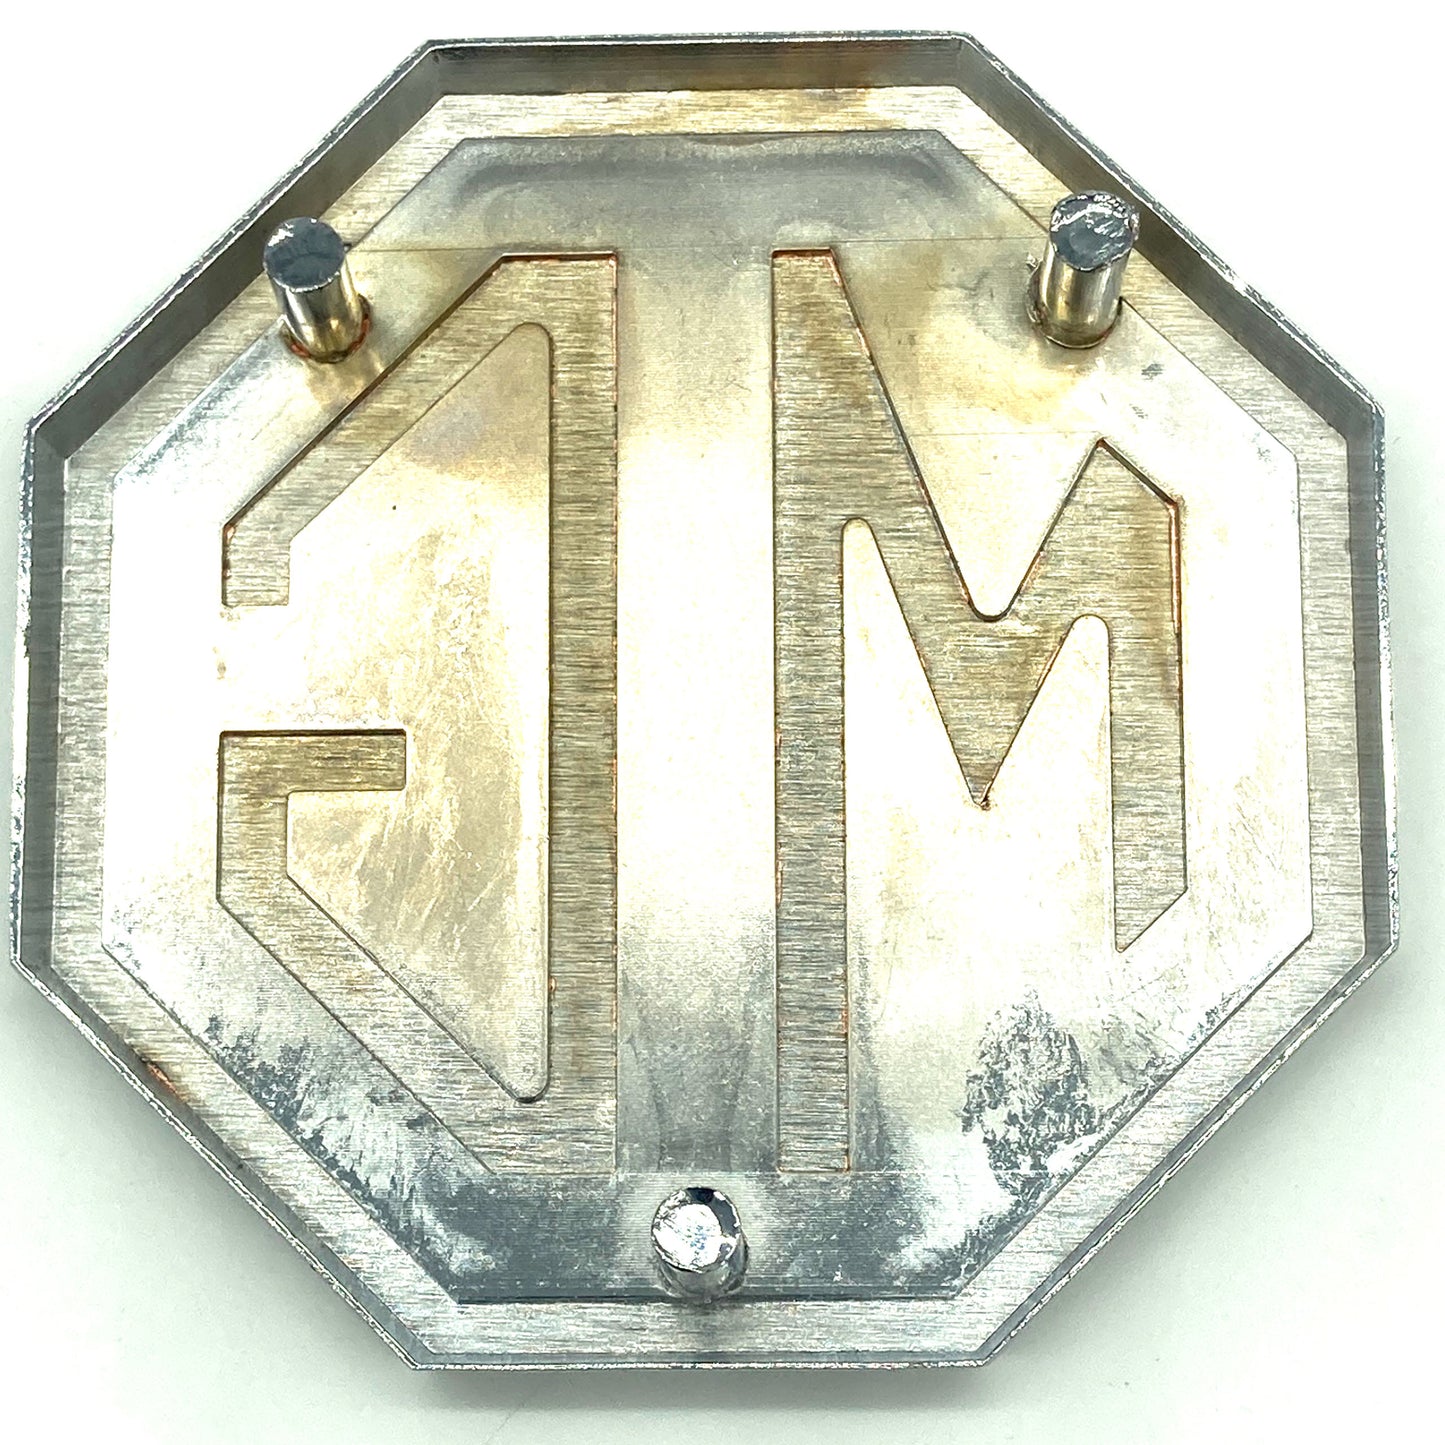 Badge Metal Octagon Boot Badge CHA545 MGB & MIDGET